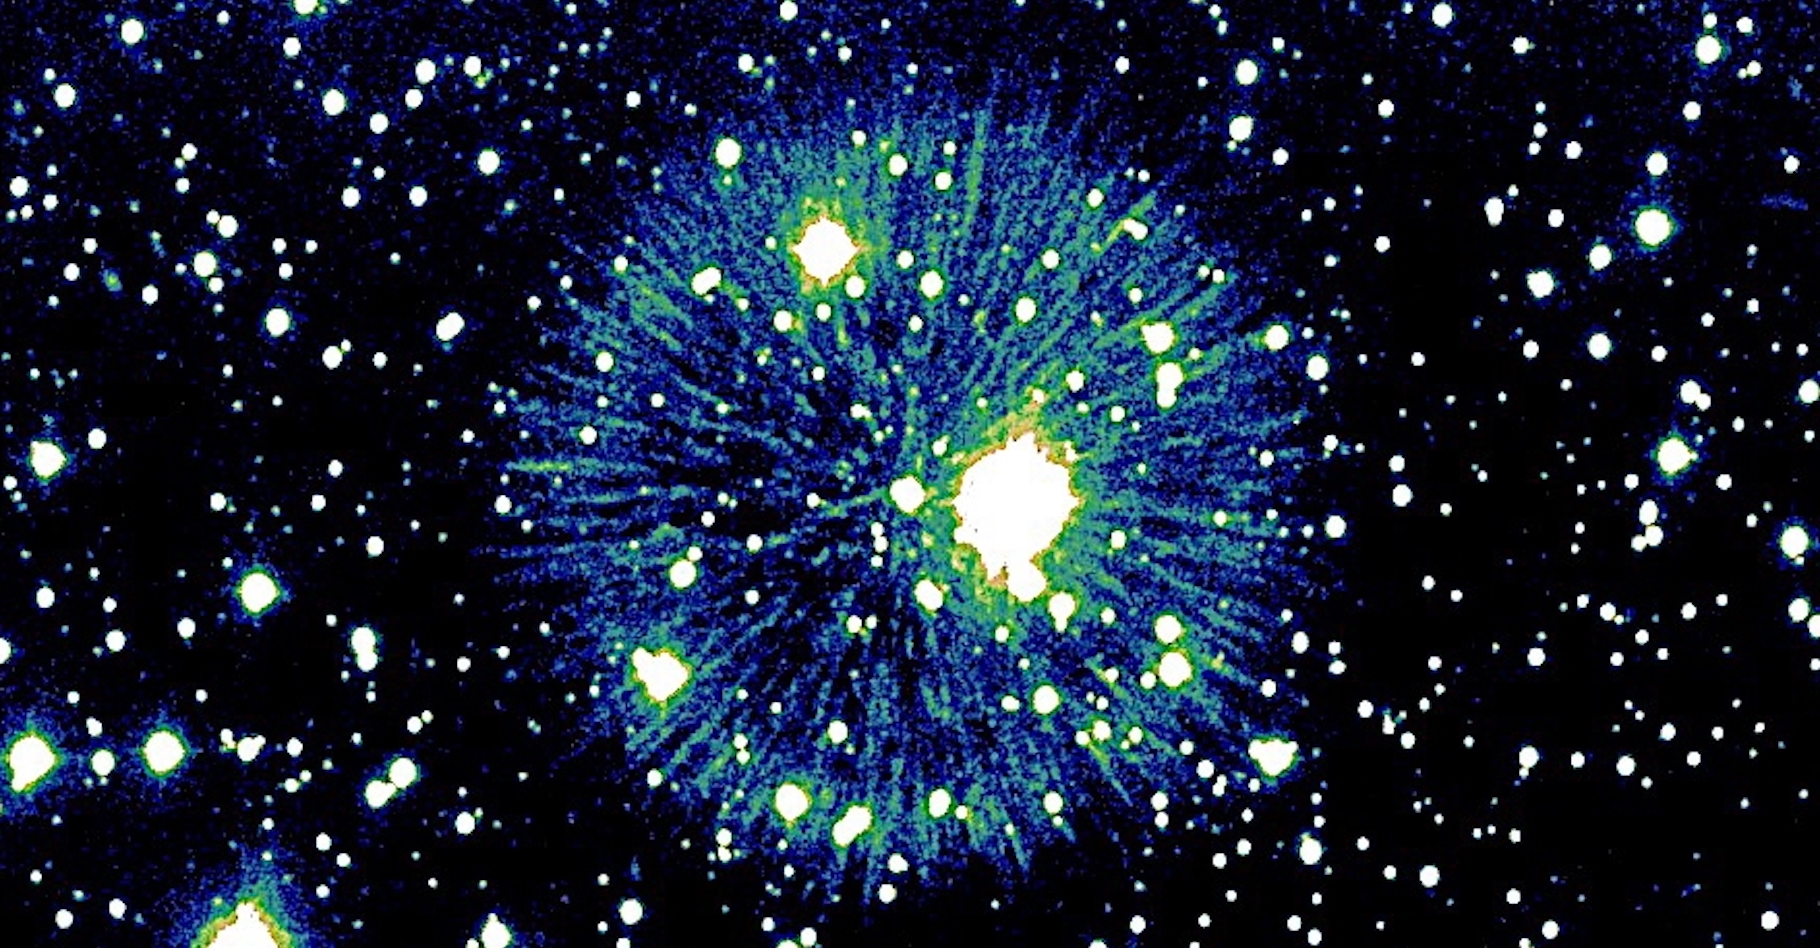 La nébuleuse Pa 30 éclate dans le ciel comme un feu d’artifice. Des chercheurs de l’université de Dartmouth estiment qu’elle pourrait être le résultat d’une collision entre naines blanches observée depuis la Terre il y a environ 850 ans. © Robert Fesen, université de Dartmouth